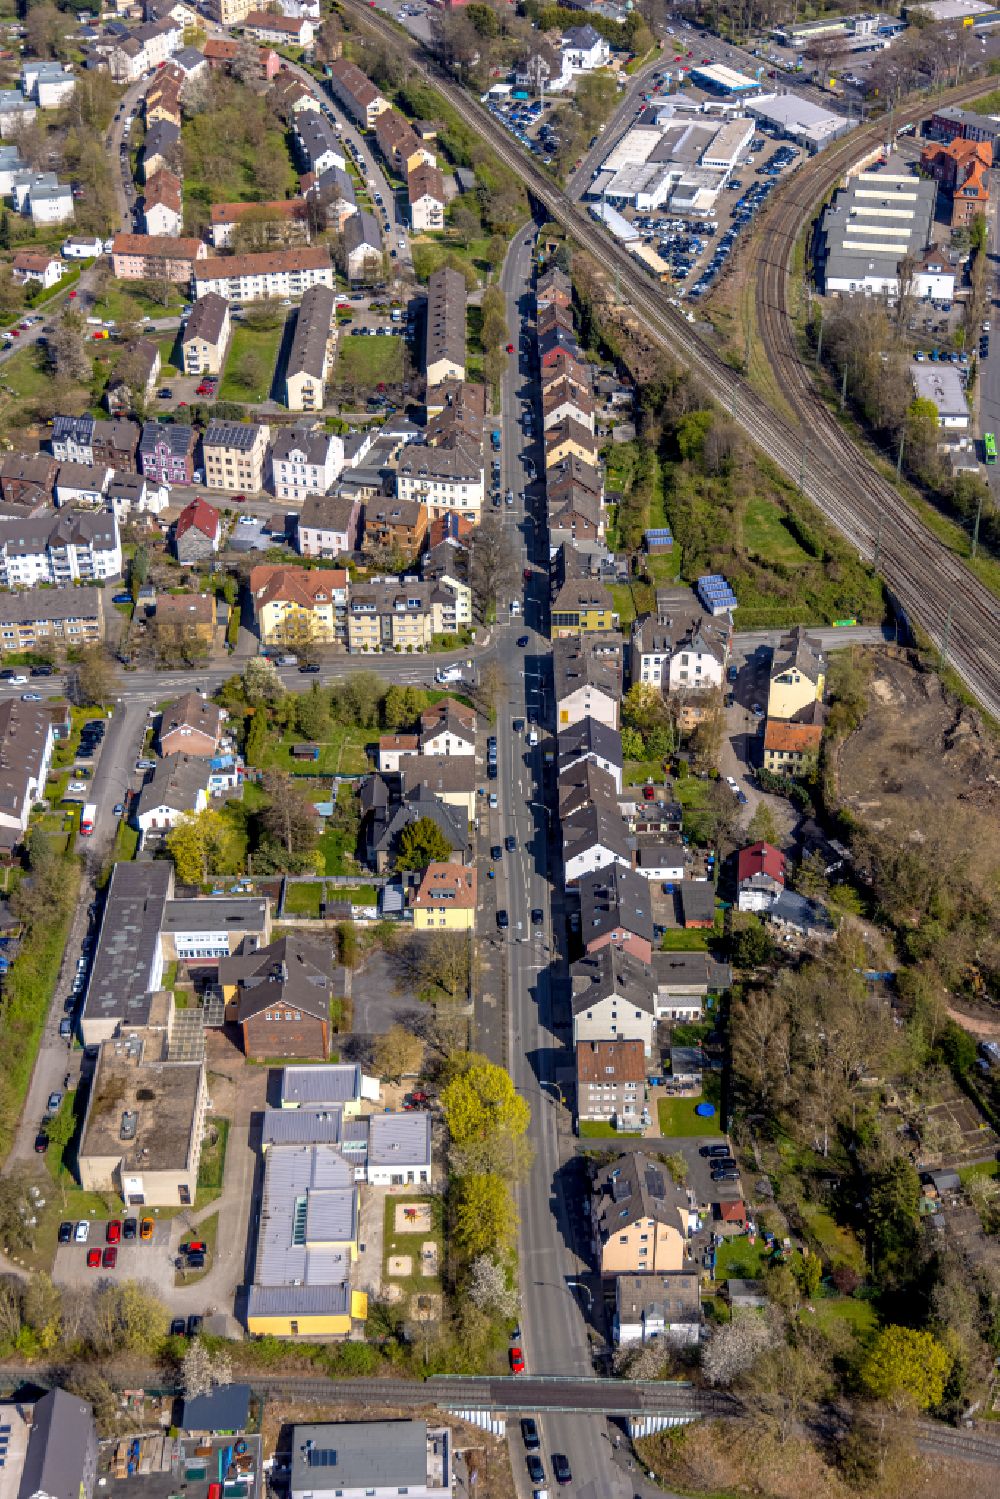 Luftbild Witten - Straßenführung entlang der Sprockhöveler Straße in Witten im Bundesland Nordrhein-Westfalen, Deutschland